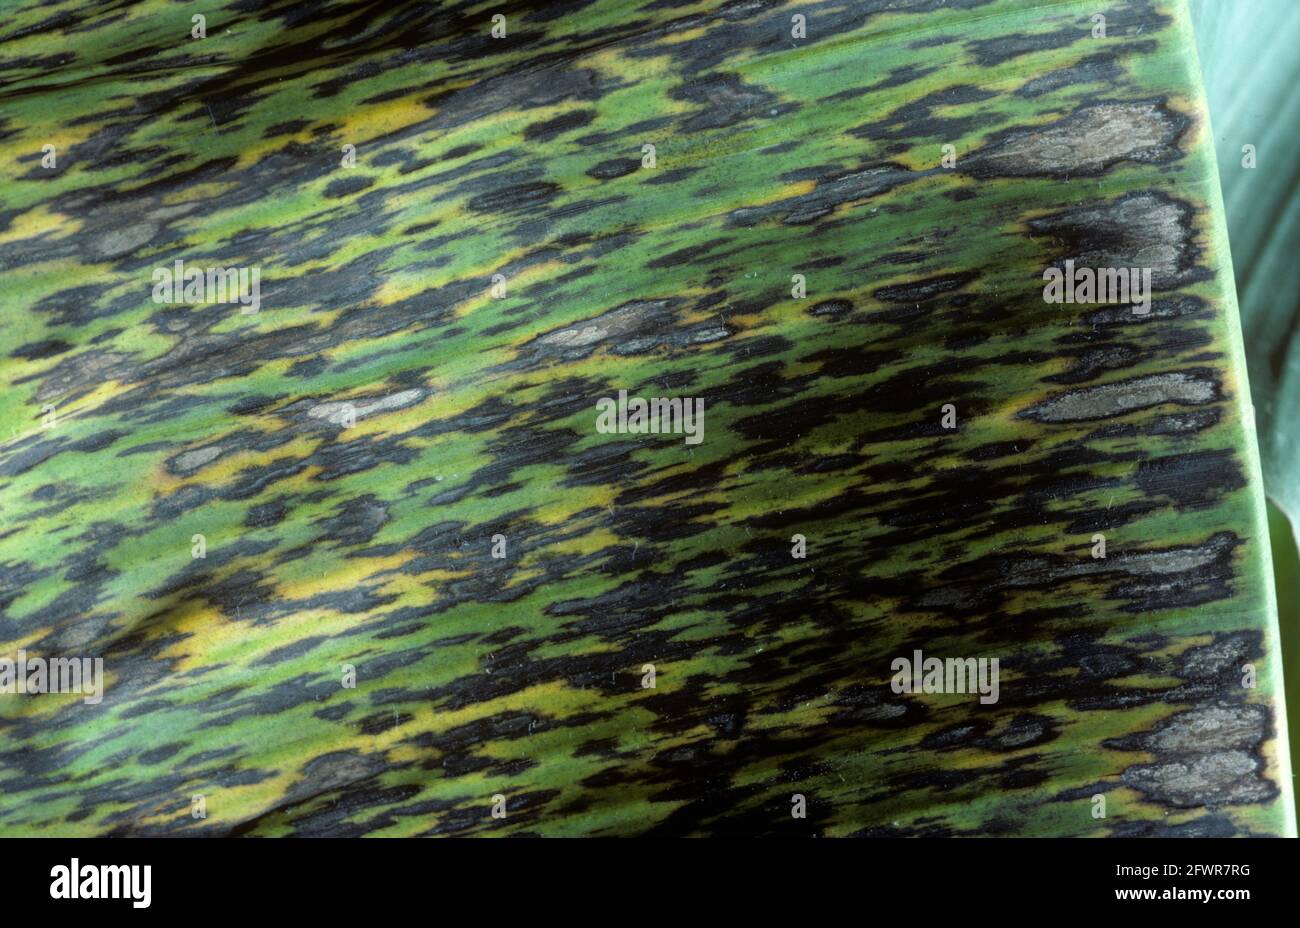 Dunkle, schwarze Läsionen der schwarzen sigatoka-Krankheit (Mycosphaerella fijiensis) auf den Blättern einer Banane, Kolumbien, April Stockfoto